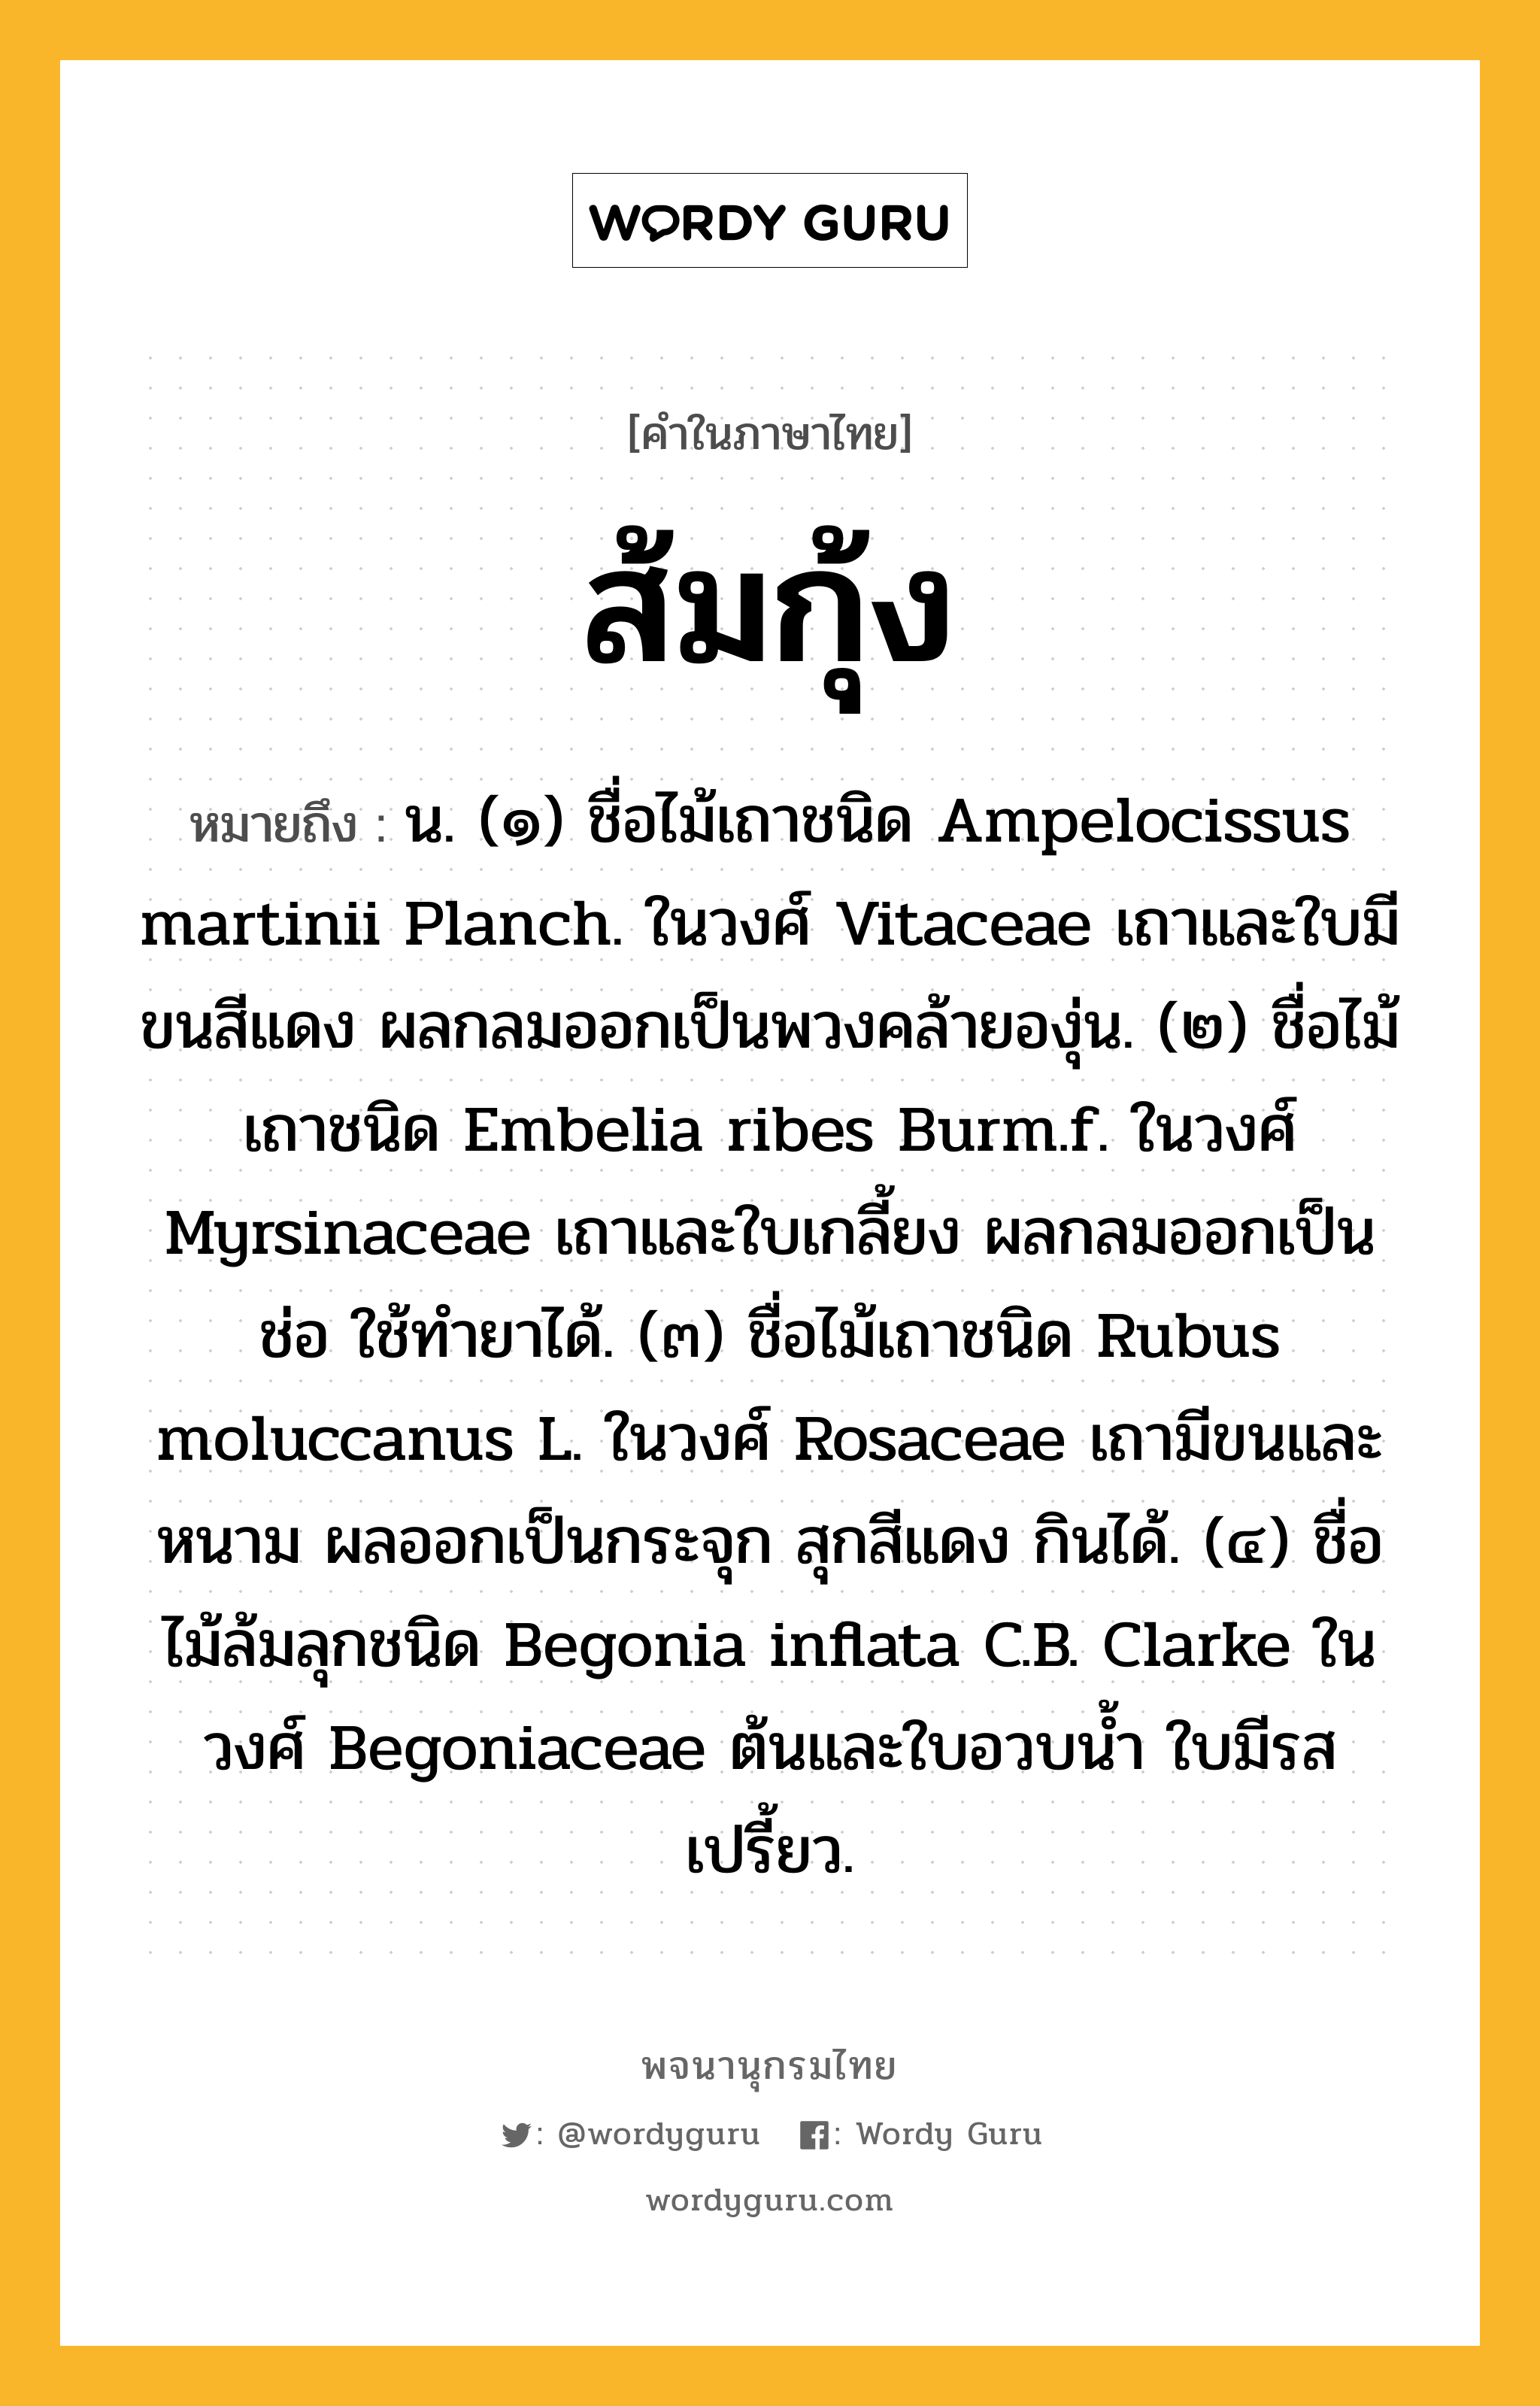 ส้มกุ้ง หมายถึงอะไร?, คำในภาษาไทย ส้มกุ้ง หมายถึง น. (๑) ชื่อไม้เถาชนิด Ampelocissus martinii Planch. ในวงศ์ Vitaceae เถาและใบมีขนสีแดง ผลกลมออกเป็นพวงคล้ายองุ่น. (๒) ชื่อไม้เถาชนิด Embelia ribes Burm.f. ในวงศ์ Myrsinaceae เถาและใบเกลี้ยง ผลกลมออกเป็นช่อ ใช้ทํายาได้. (๓) ชื่อไม้เถาชนิด Rubus moluccanus L. ในวงศ์ Rosaceae เถามีขนและหนาม ผลออกเป็นกระจุก สุกสีแดง กินได้. (๔) ชื่อไม้ล้มลุกชนิด Begonia inflata C.B. Clarke ในวงศ์ Begoniaceae ต้นและใบอวบนํ้า ใบมีรสเปรี้ยว.